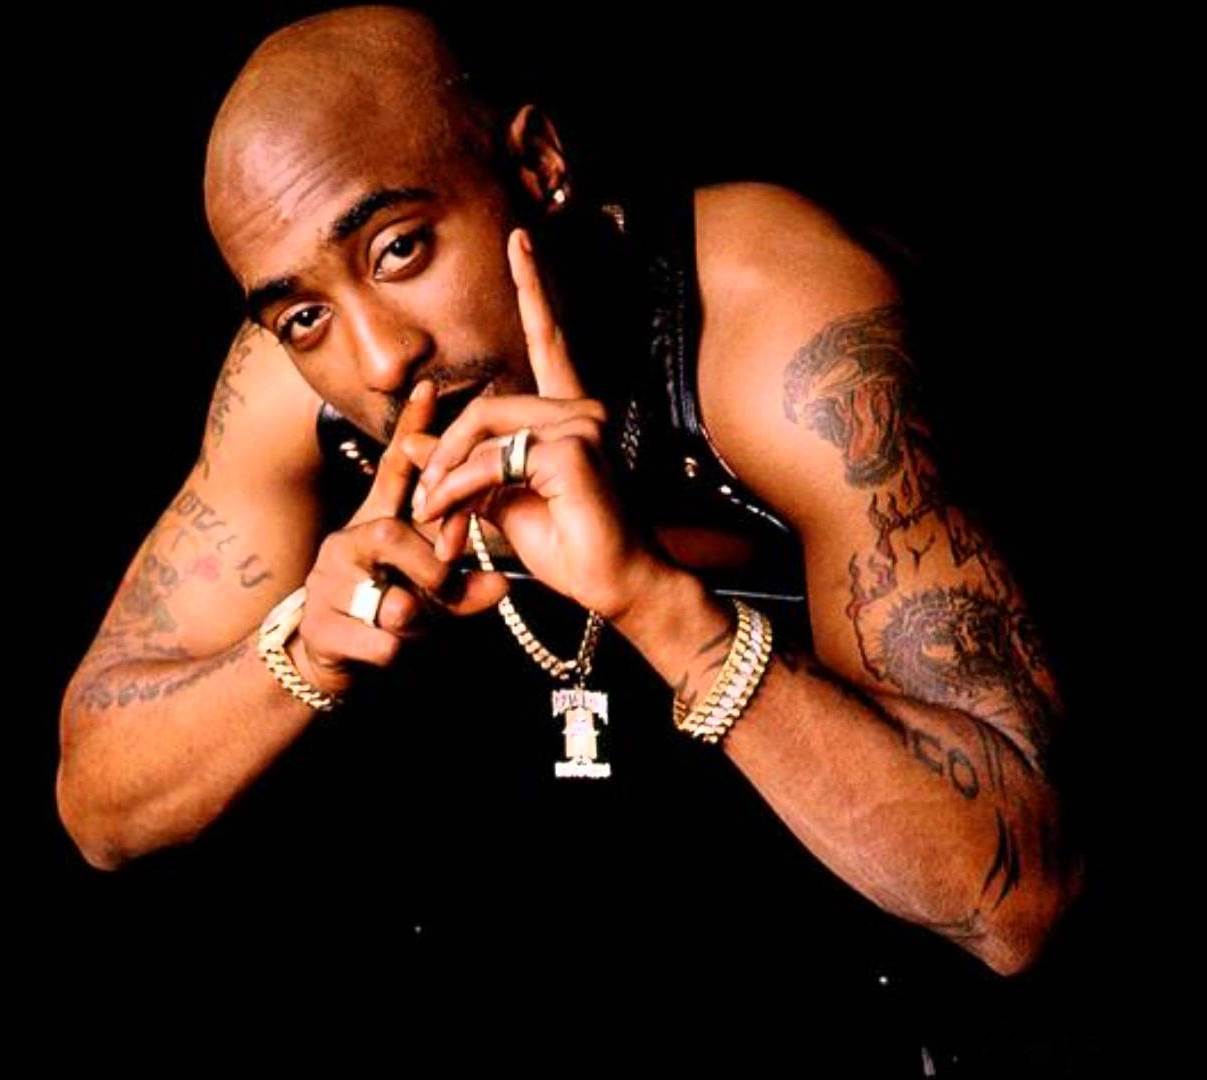 După mai bine de 20 de ani, s-a aflat cine l-a omorât pe Tupac